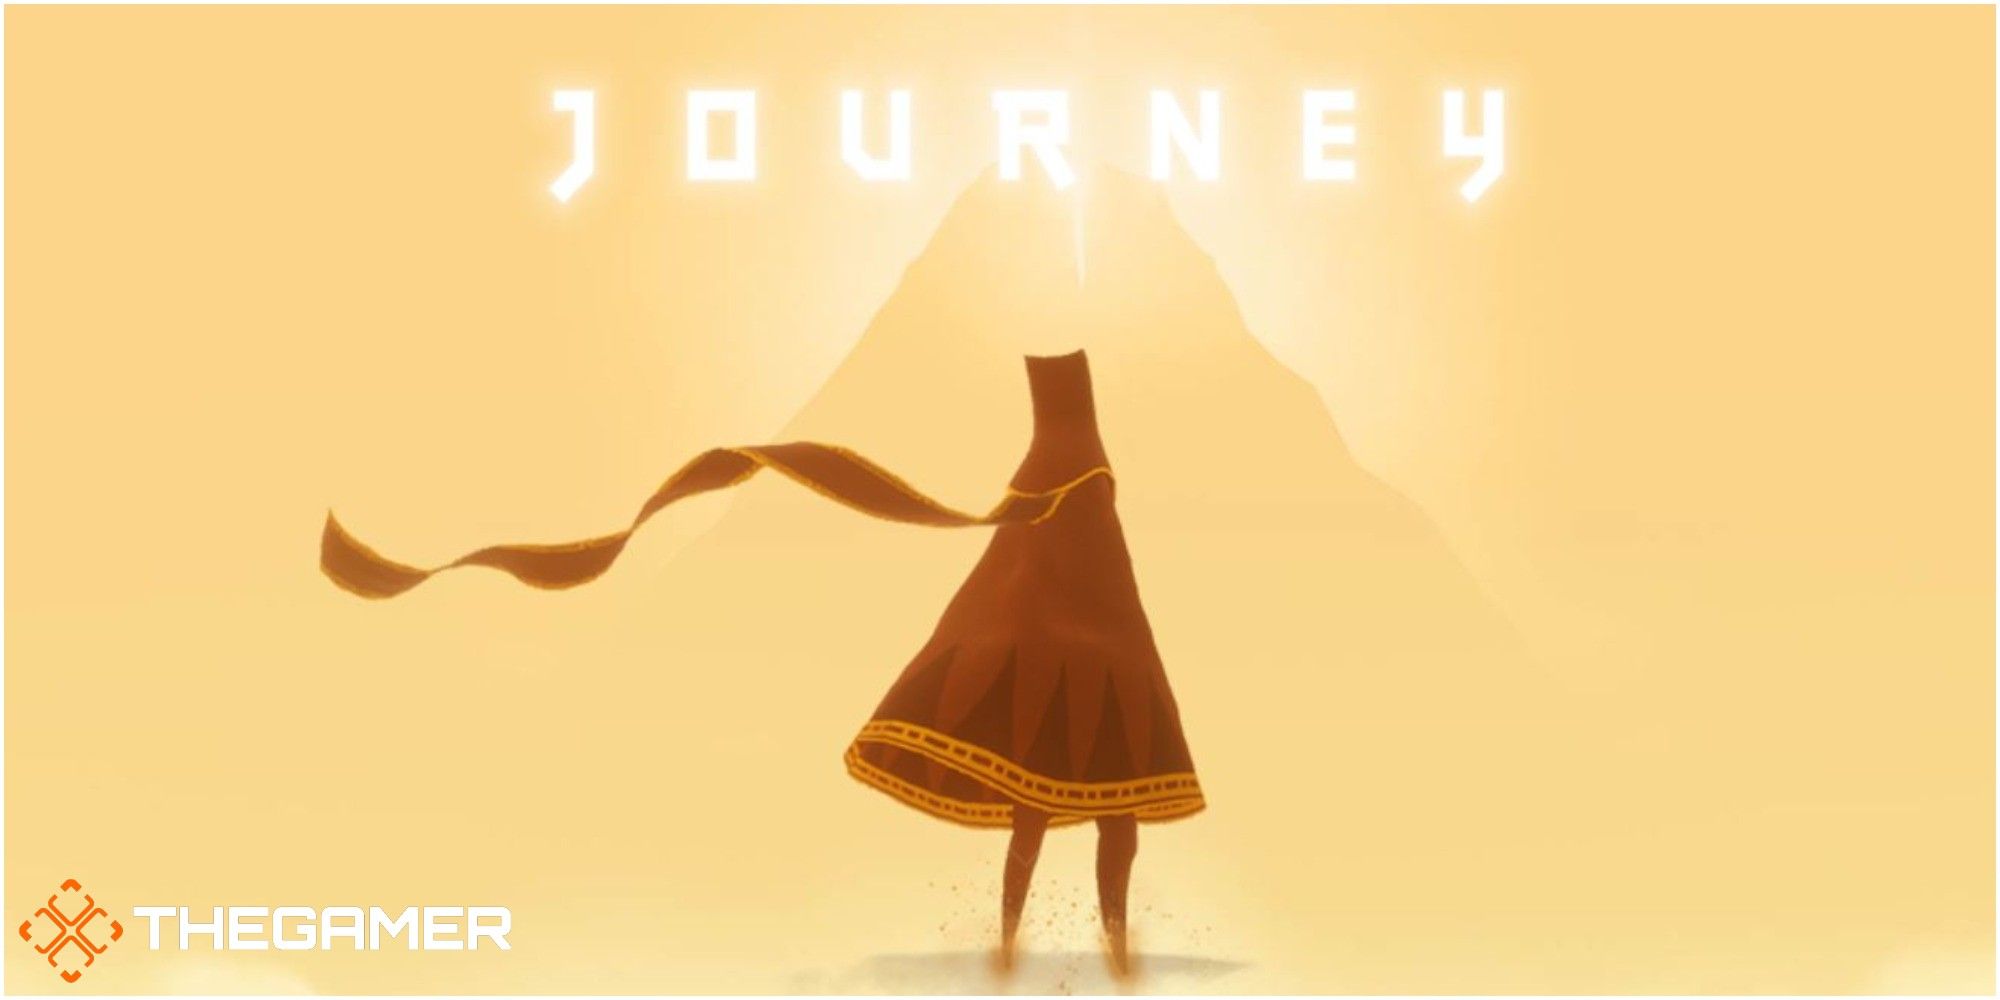 May journey. Journey игра thatgamecompany. Journey (игра, 2012). Джорни путешествие игра. Journey игра логотип.